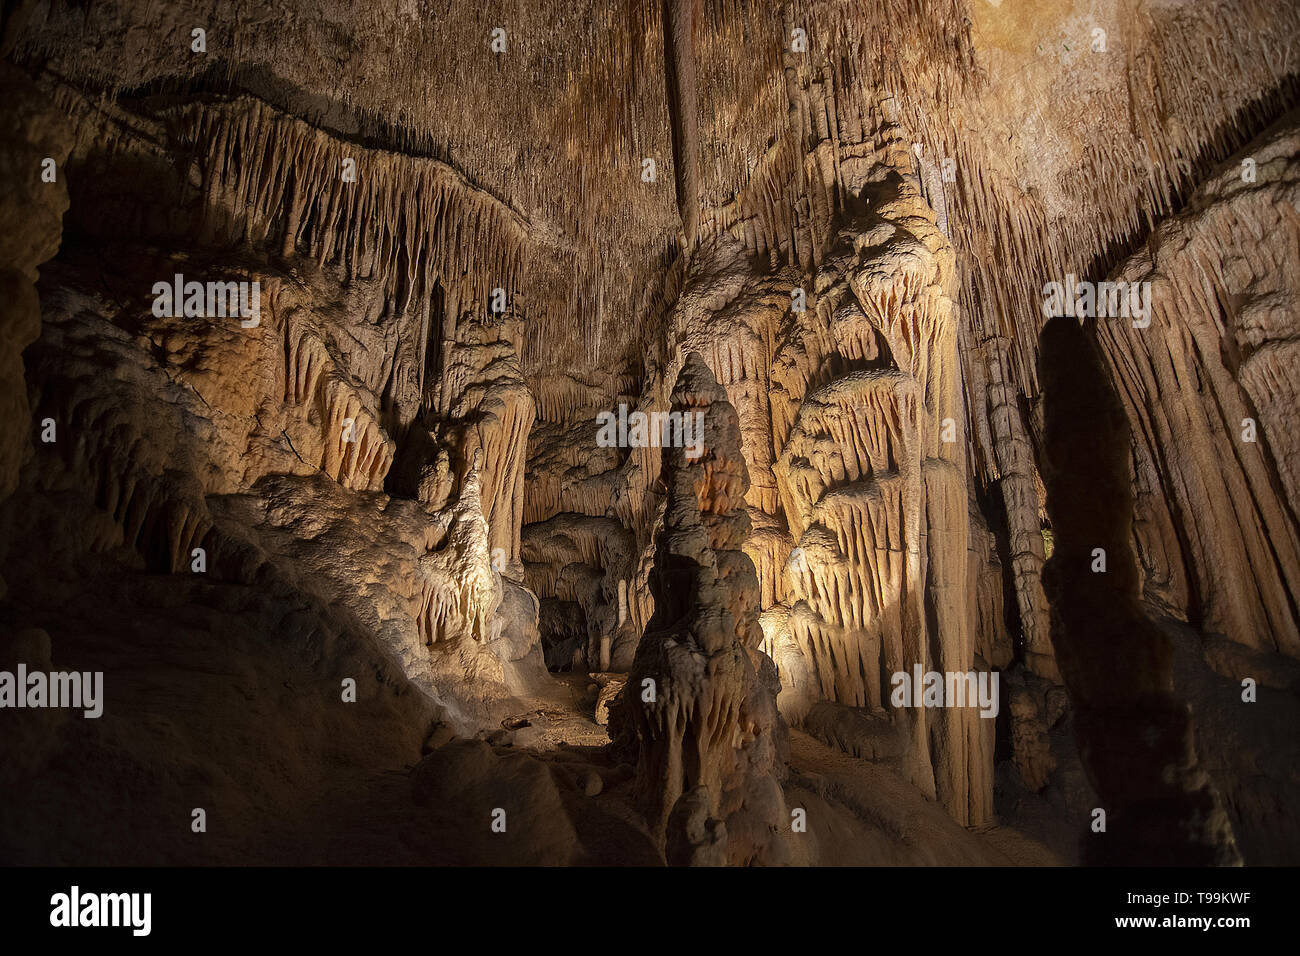 Intérieur grotte avec des stalactites et stalagmites, Cuevas del Drach, Mallorca, Espagne. Banque D'Images